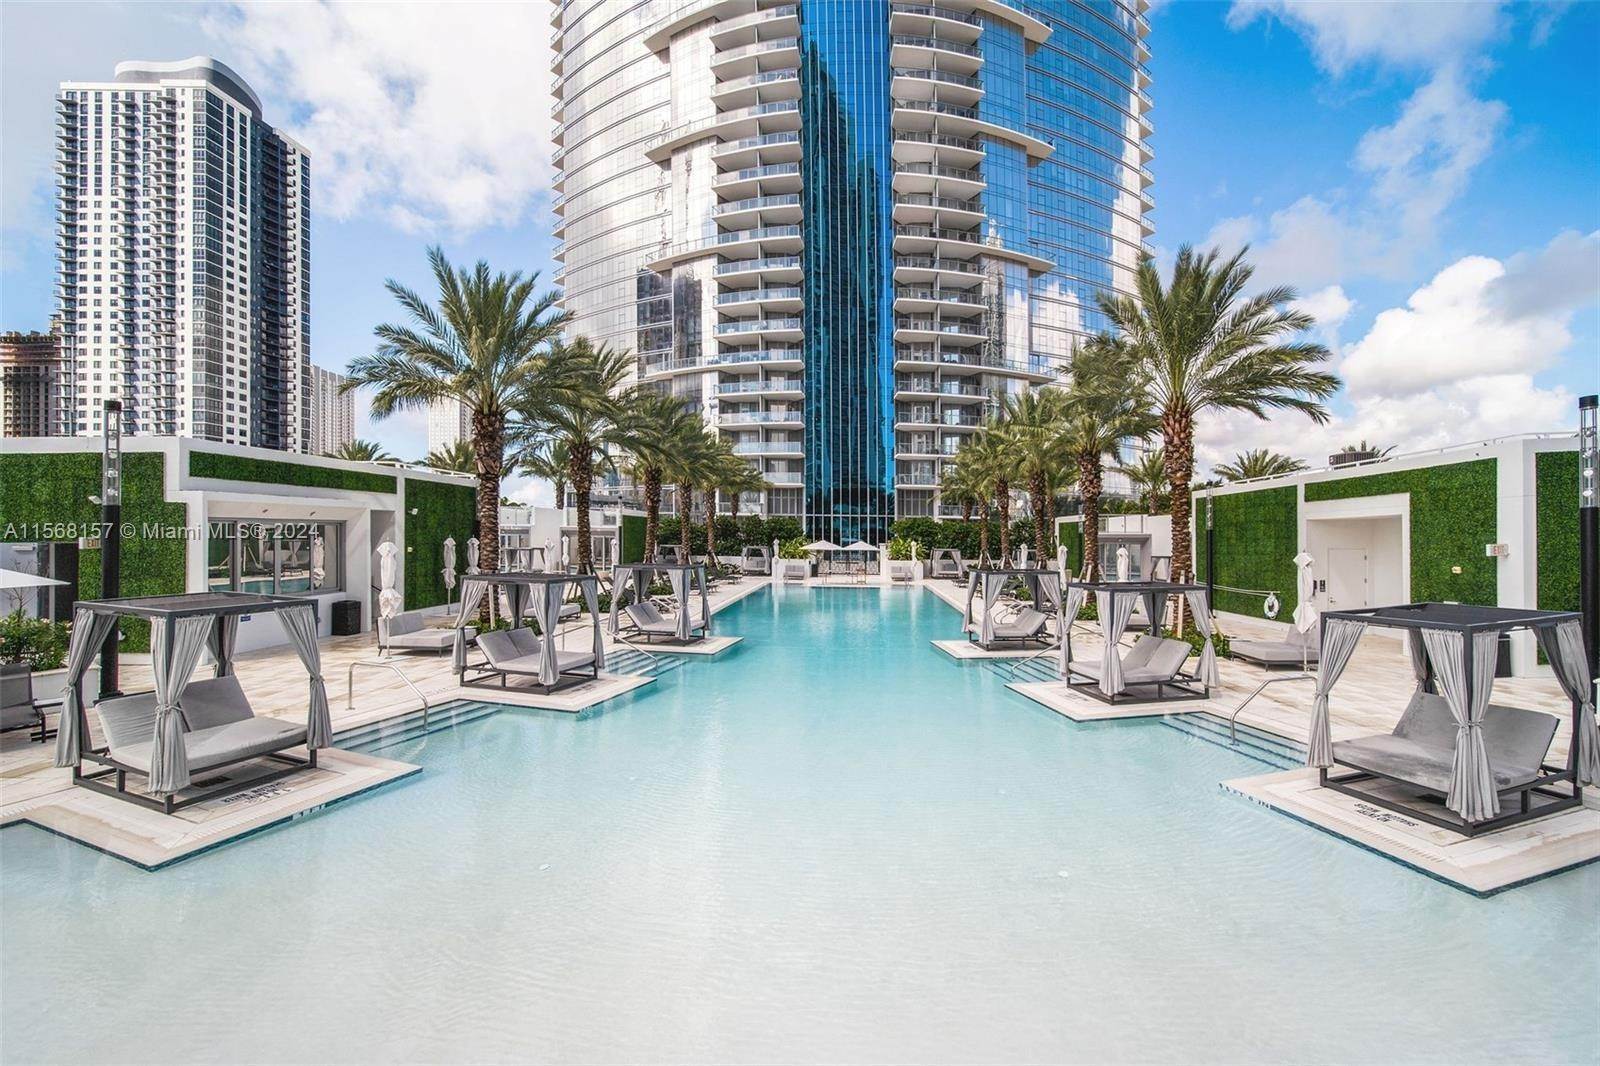 Condominium voor Verkoop op Park West, Miami, FL 33132